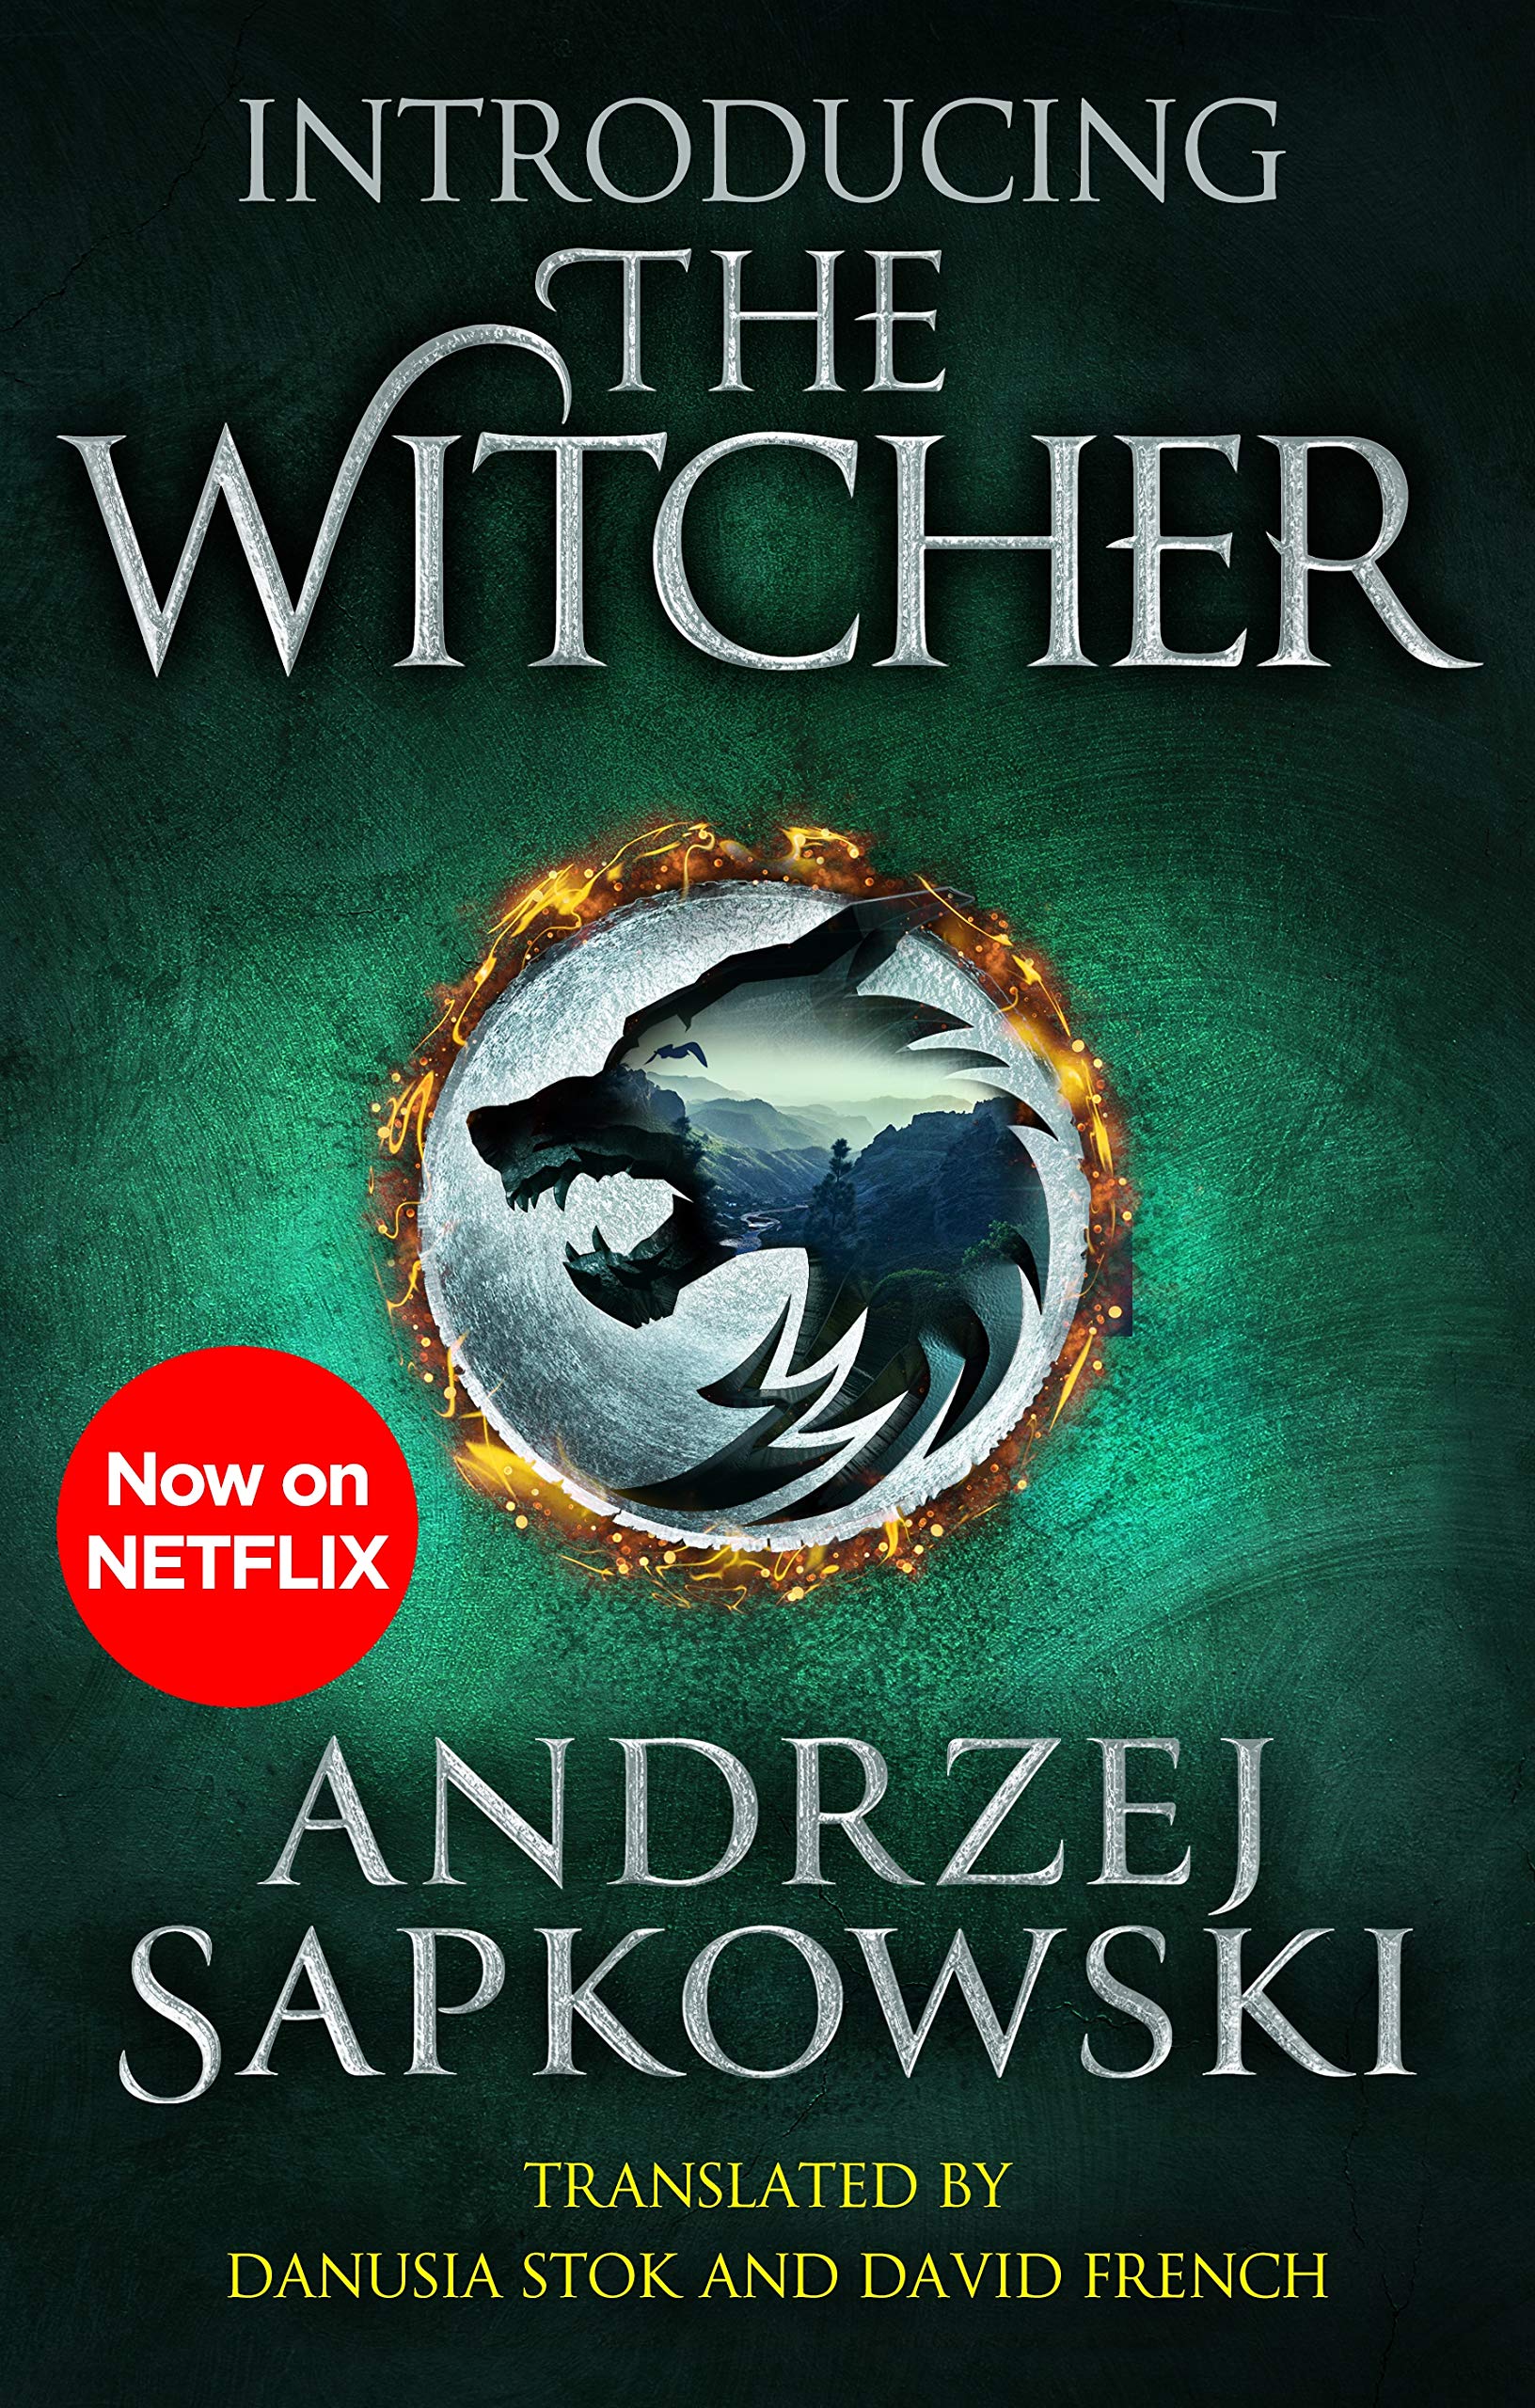 Introducing The Witcher By Andrzej Sapkowski